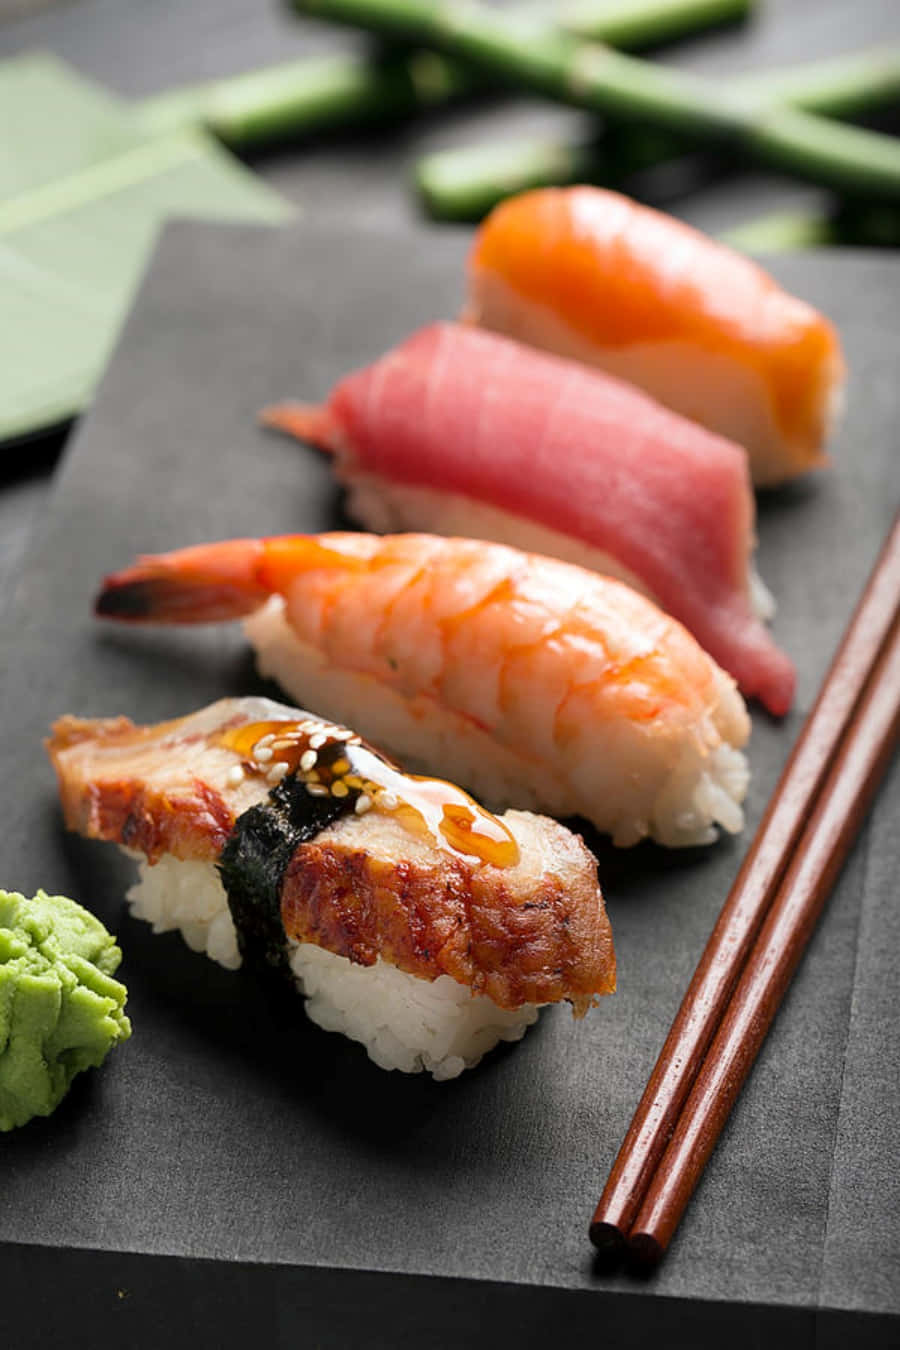 Feel the freshness of sushi, wherever you go!